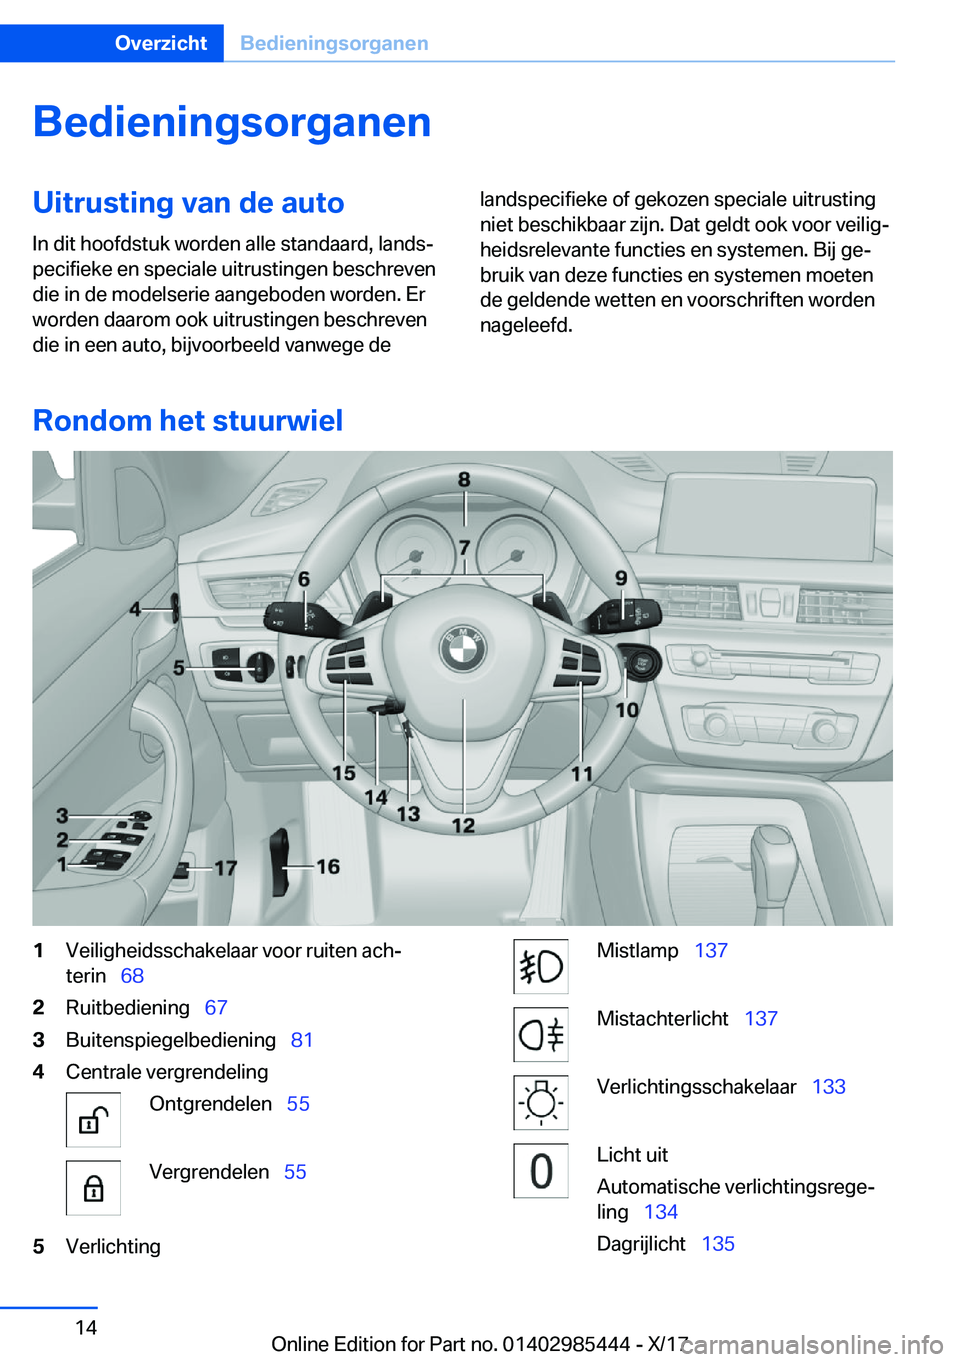 BMW X1 2018  Instructieboekjes (in Dutch) �B�e�d�i�e�n�i�n�g�s�o�r�g�a�n�e�n�U�i�t�r�u�s�t�i�n�g��v�a�n��d�e��a�u�t�o�I�n� �d�i�t� �h�o�o�f�d�s�t�u�k� �w�o�r�d�e�n� �a�l�l�e� �s�t�a�n�d�a�a�r�d�,� �l�a�n�d�sj
�p�e�c�i�f�i�e�k�e� �e�n� �s�